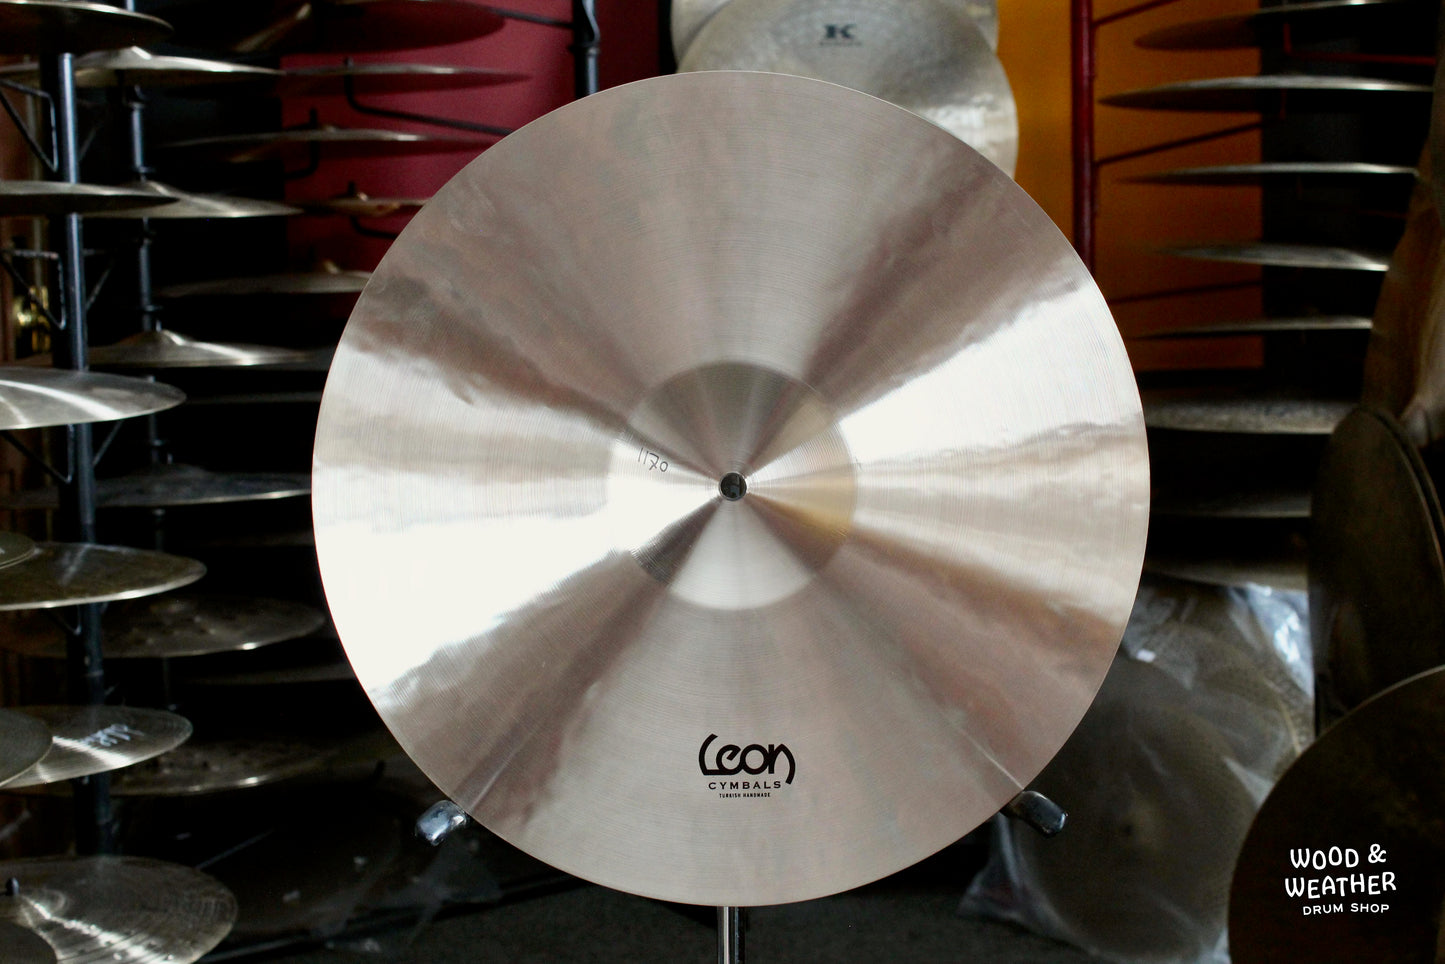 Leon Cymbals 17" Classic Crash Cymbal 1170g